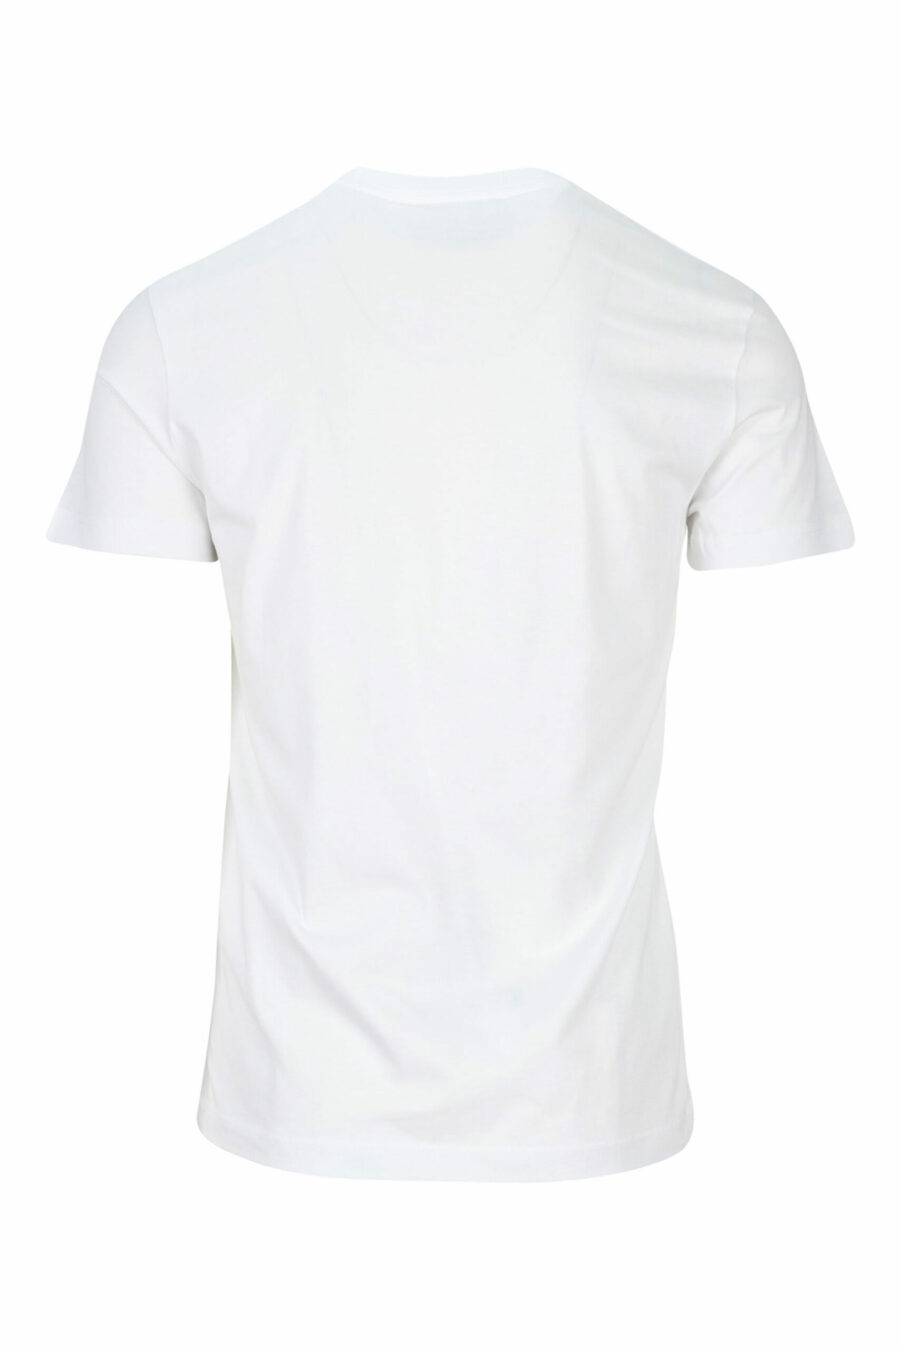 T-shirt branca com minilogo prateado "piece number" - 8052019456936 1 scaled